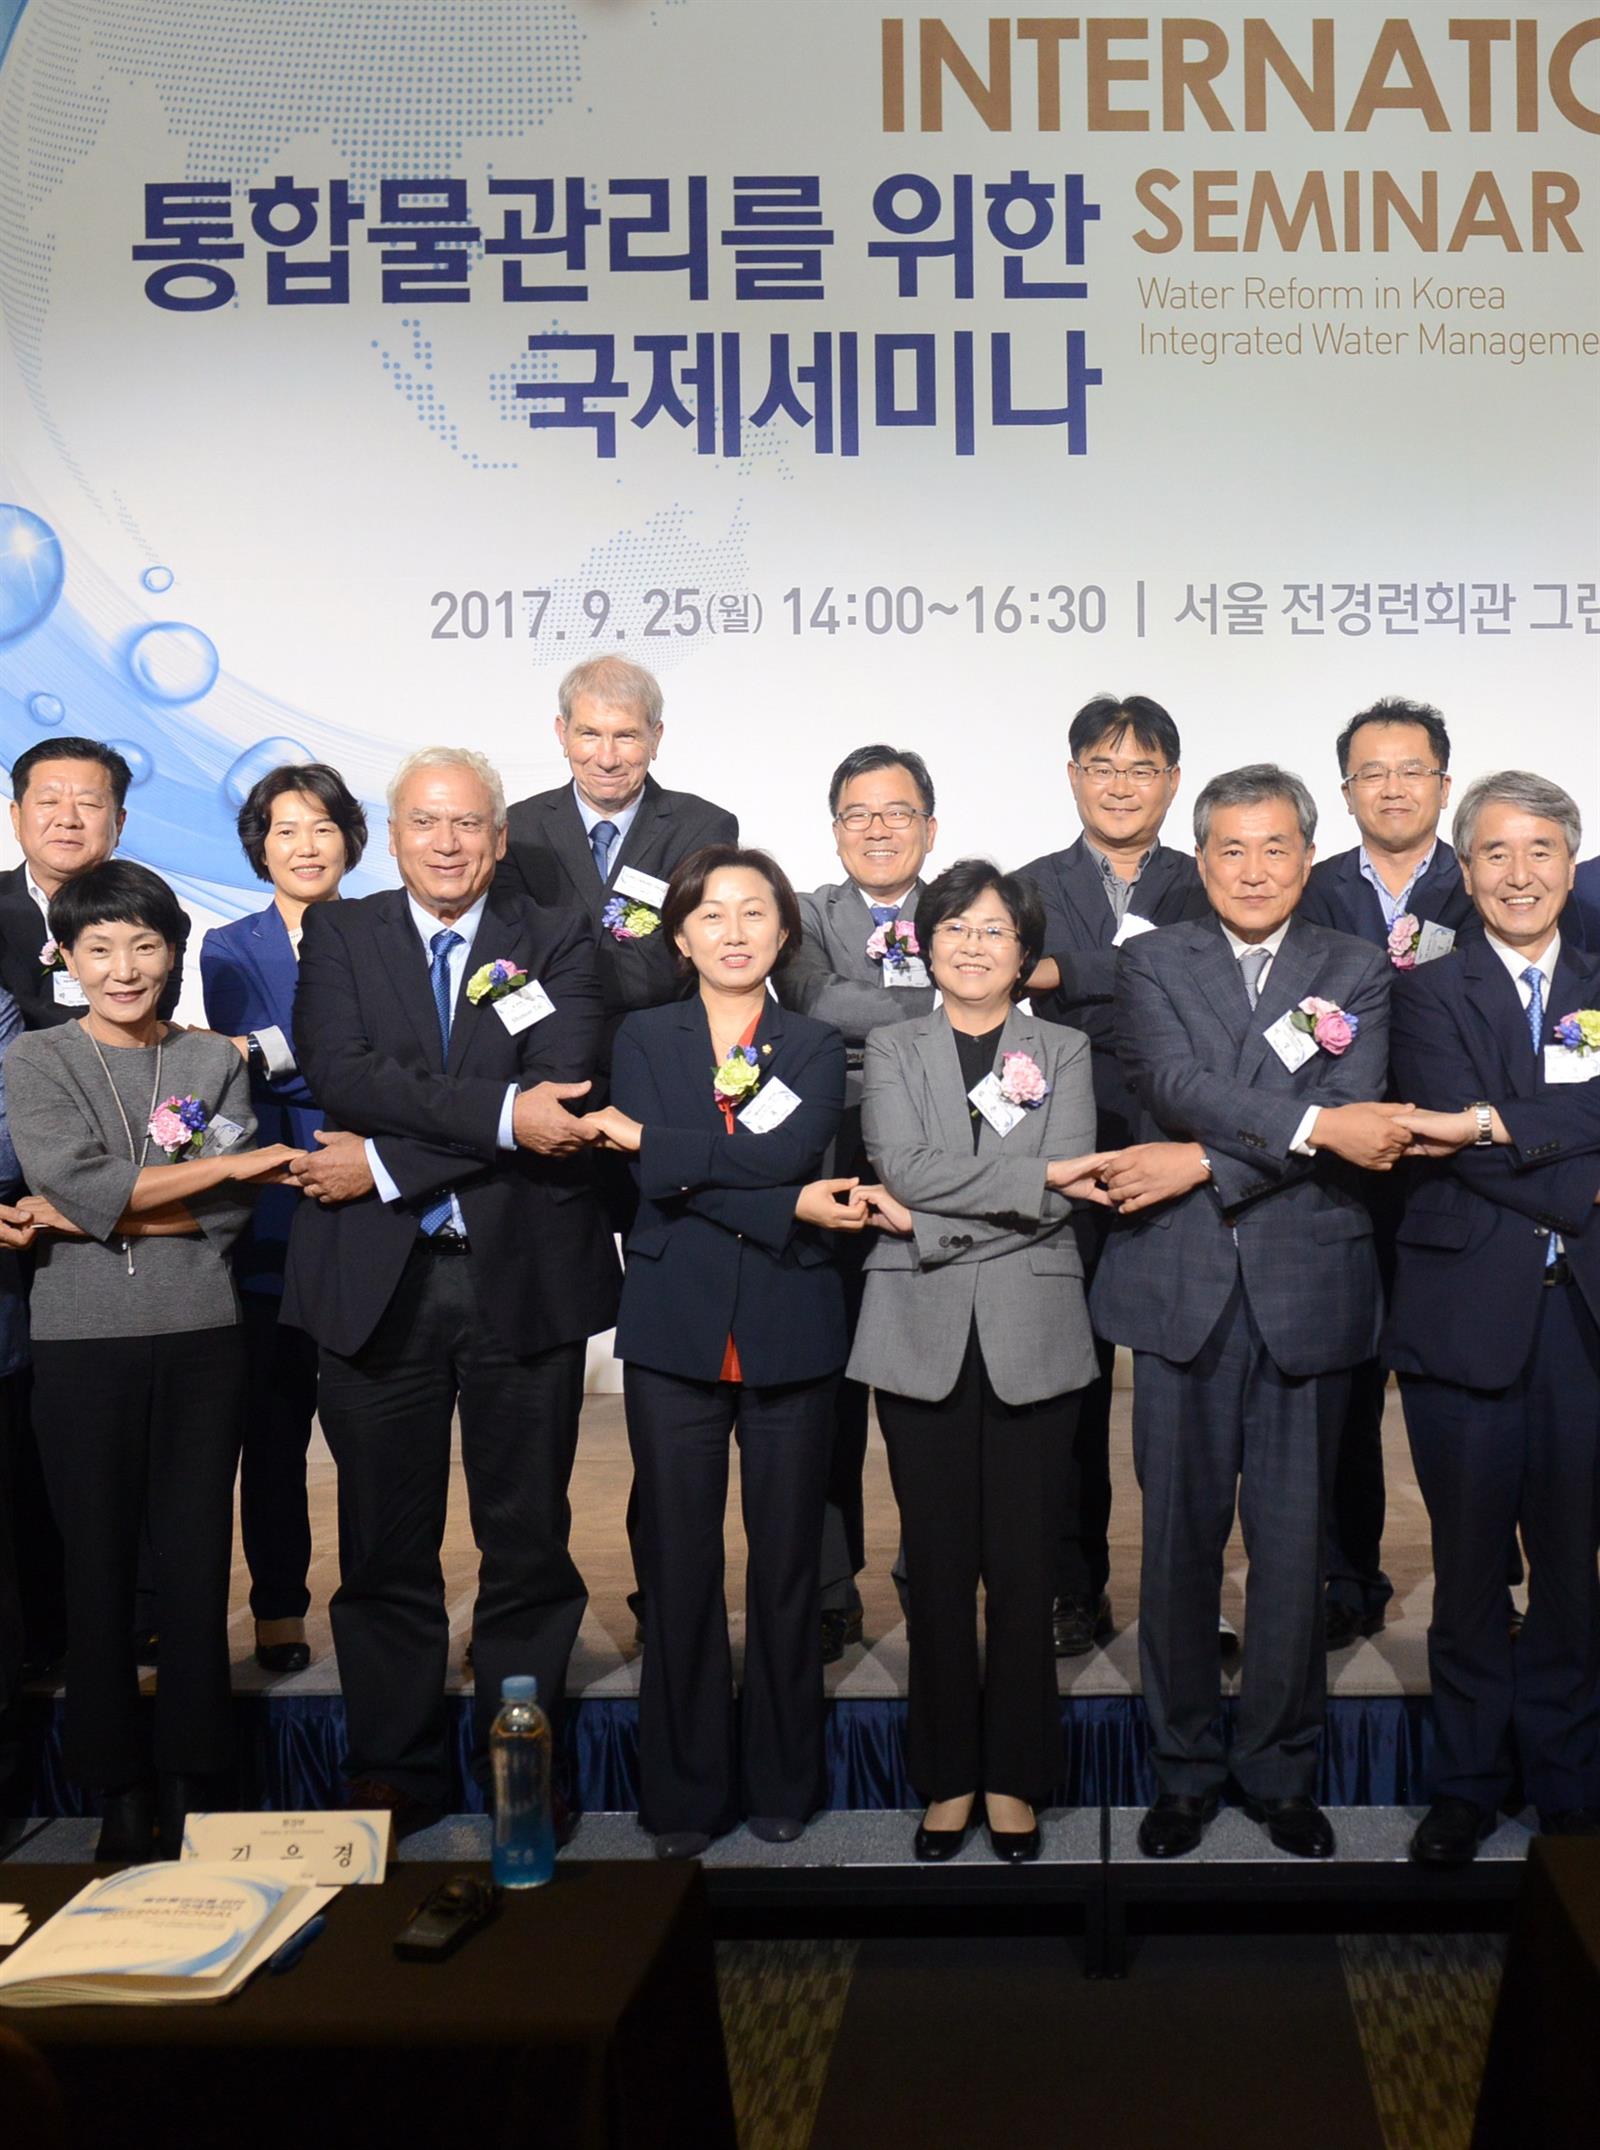 יעוץ לממשלת קוריאה בארגון וניהול מערכות המים+סמינר בנושאי מים ספטמבר 2017